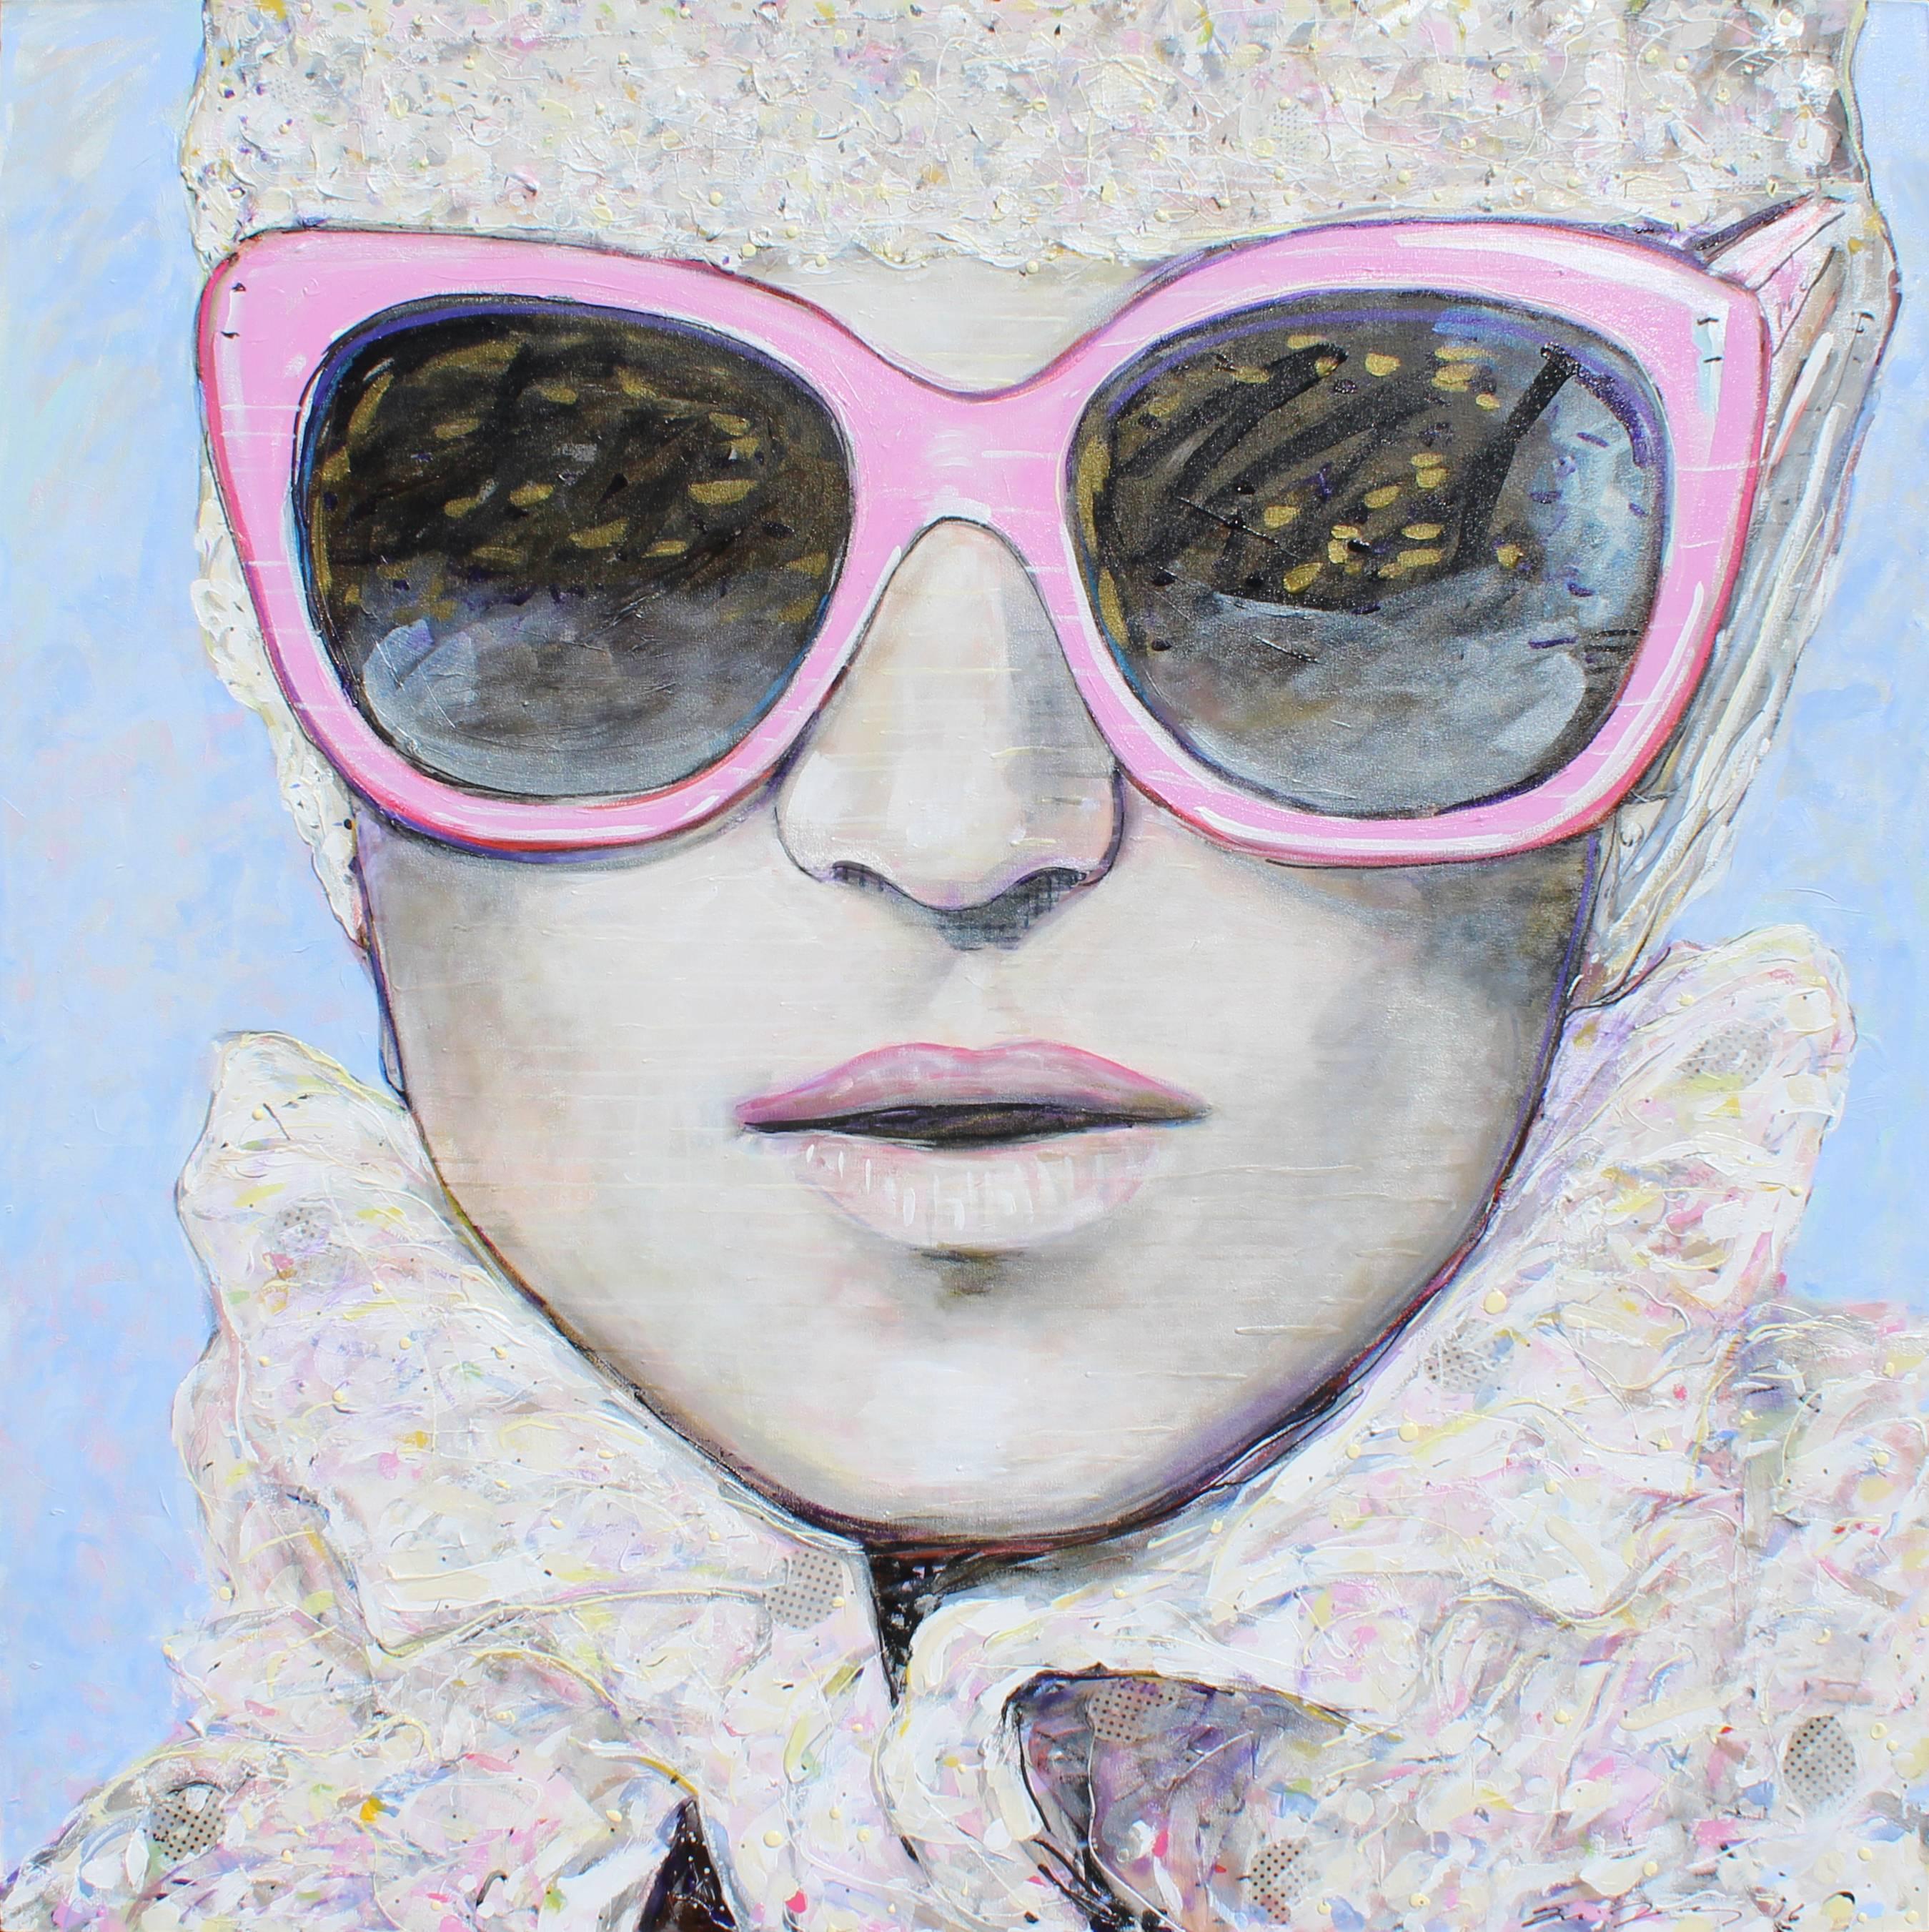 José Gonçalves Portrait Painting - Mixed Media Portrait of Woman with Sunglasses // Rosa